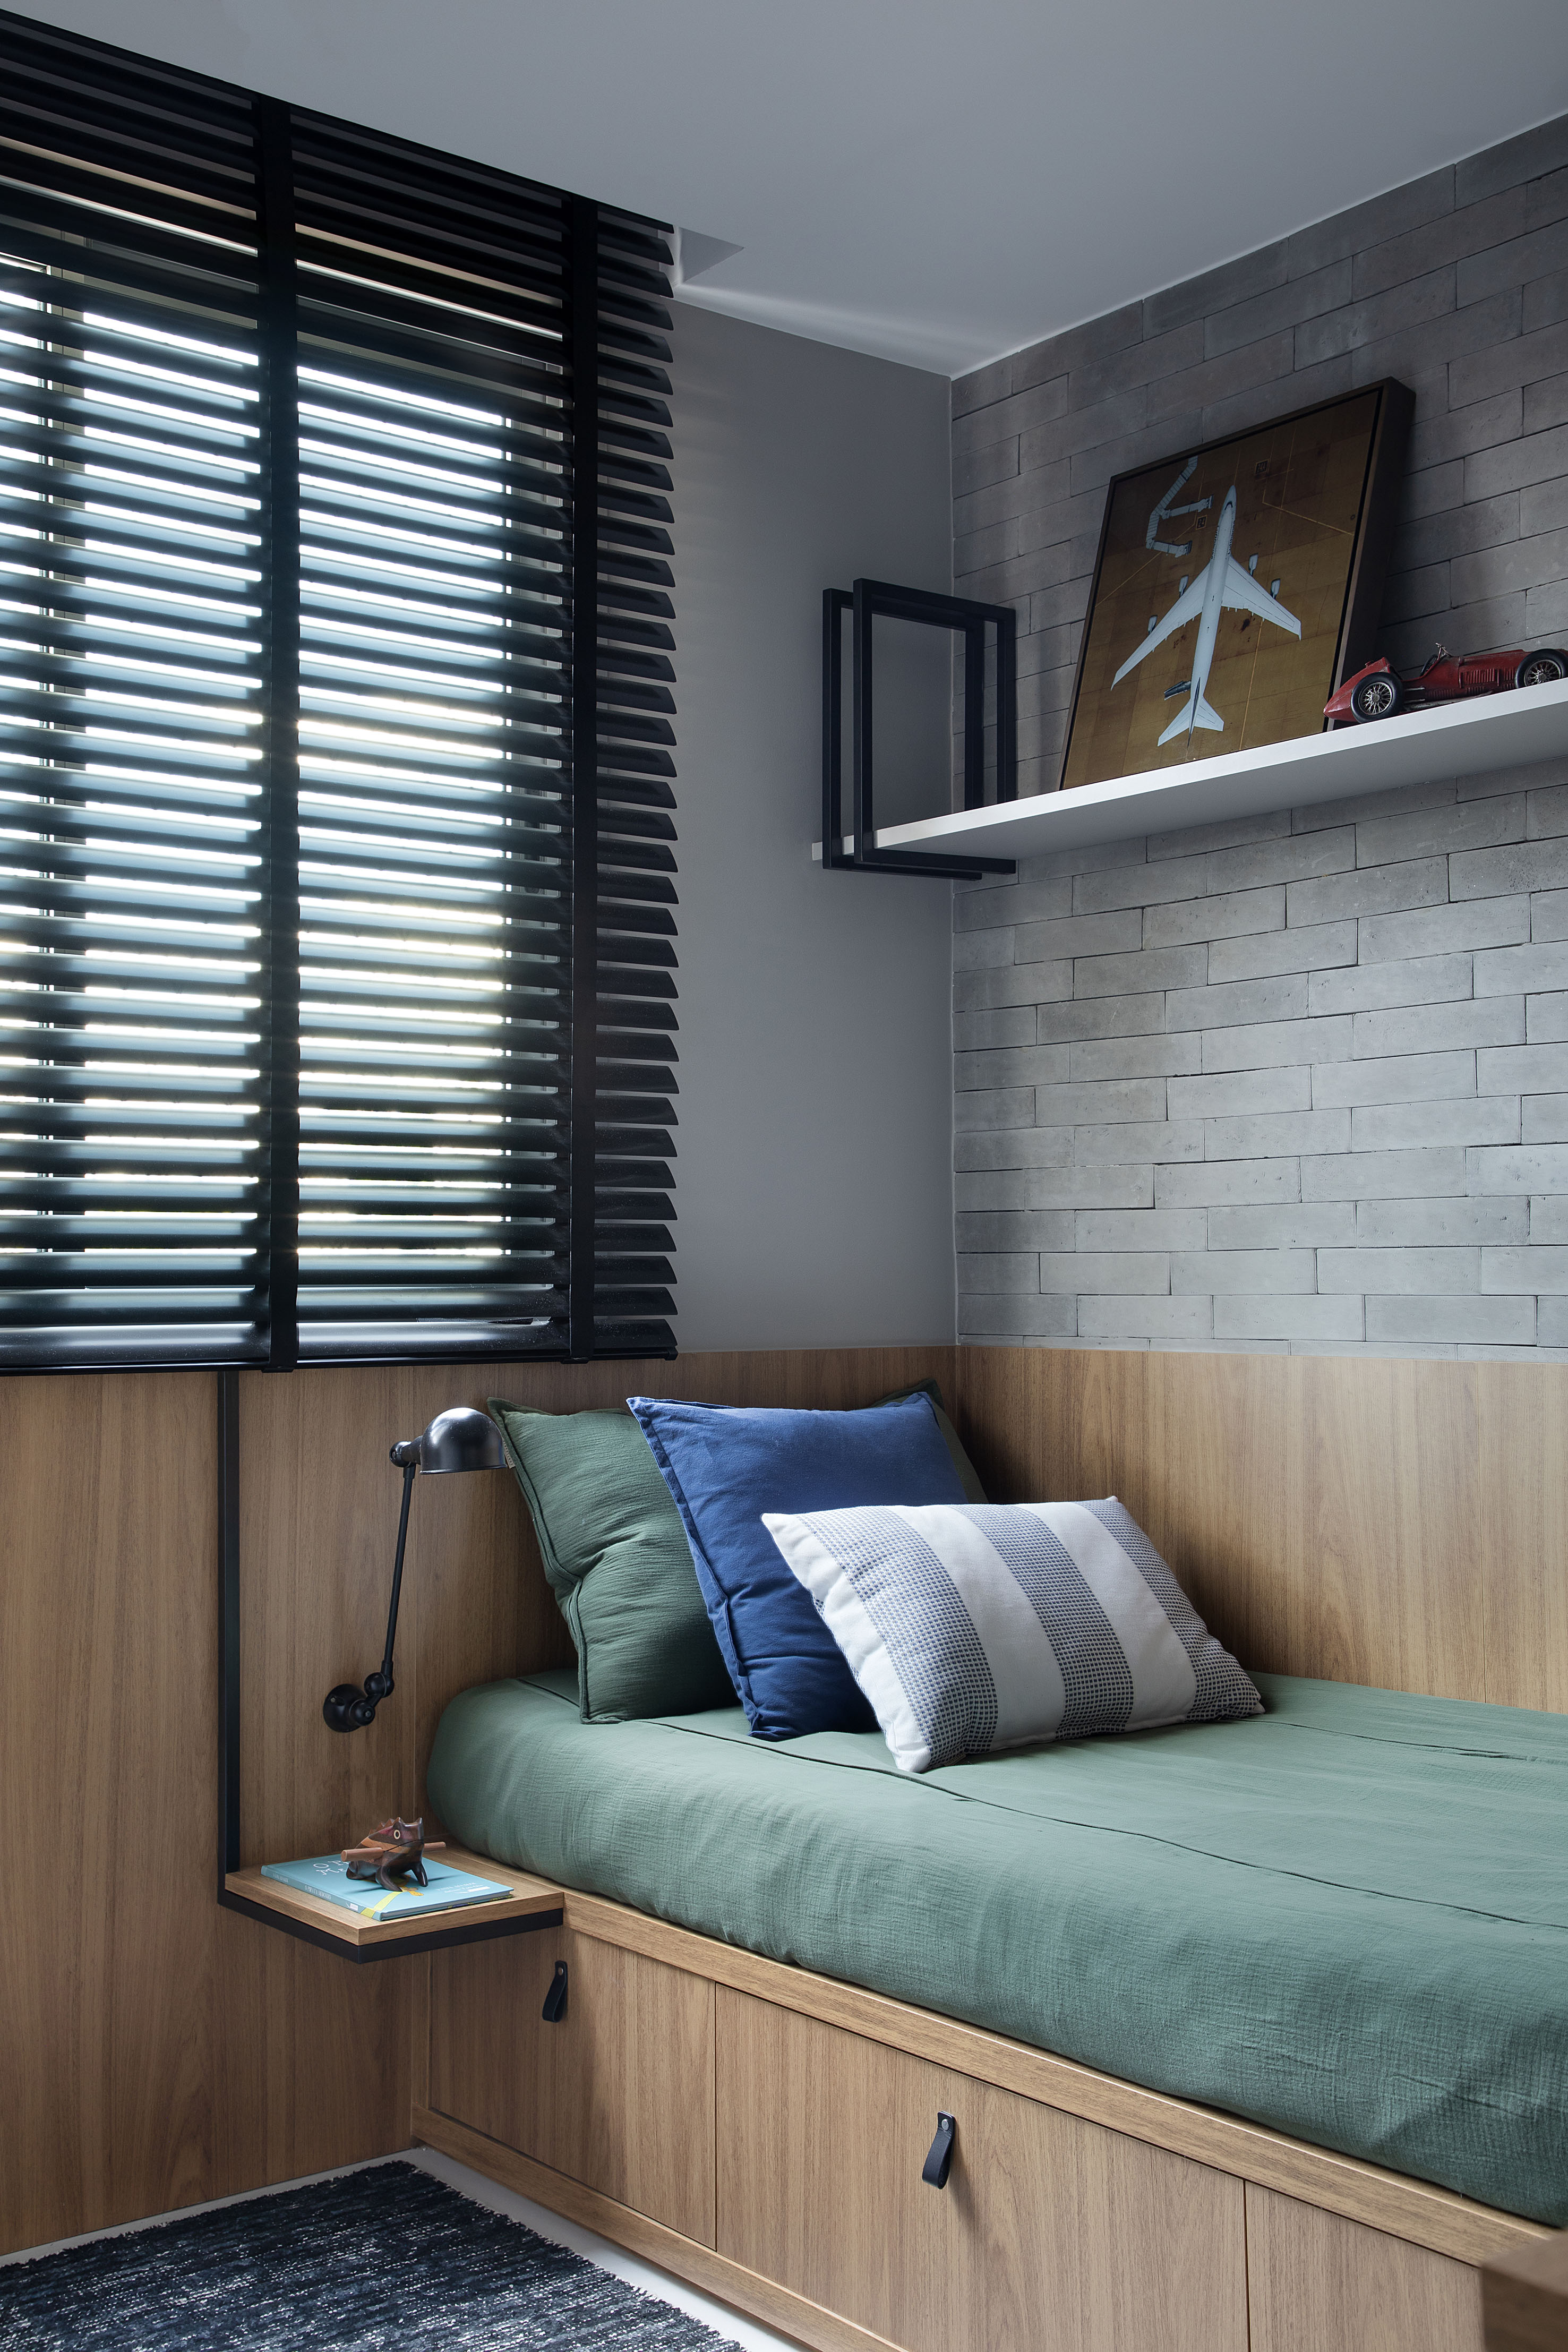 Materiais naturais como madeira, couro, linho e fibra natural marcam apê. Projeto de Ikeda Arquitetura. Na foto, quarto infantil com cama de solteiro, parede de tijolinhos e persiana.